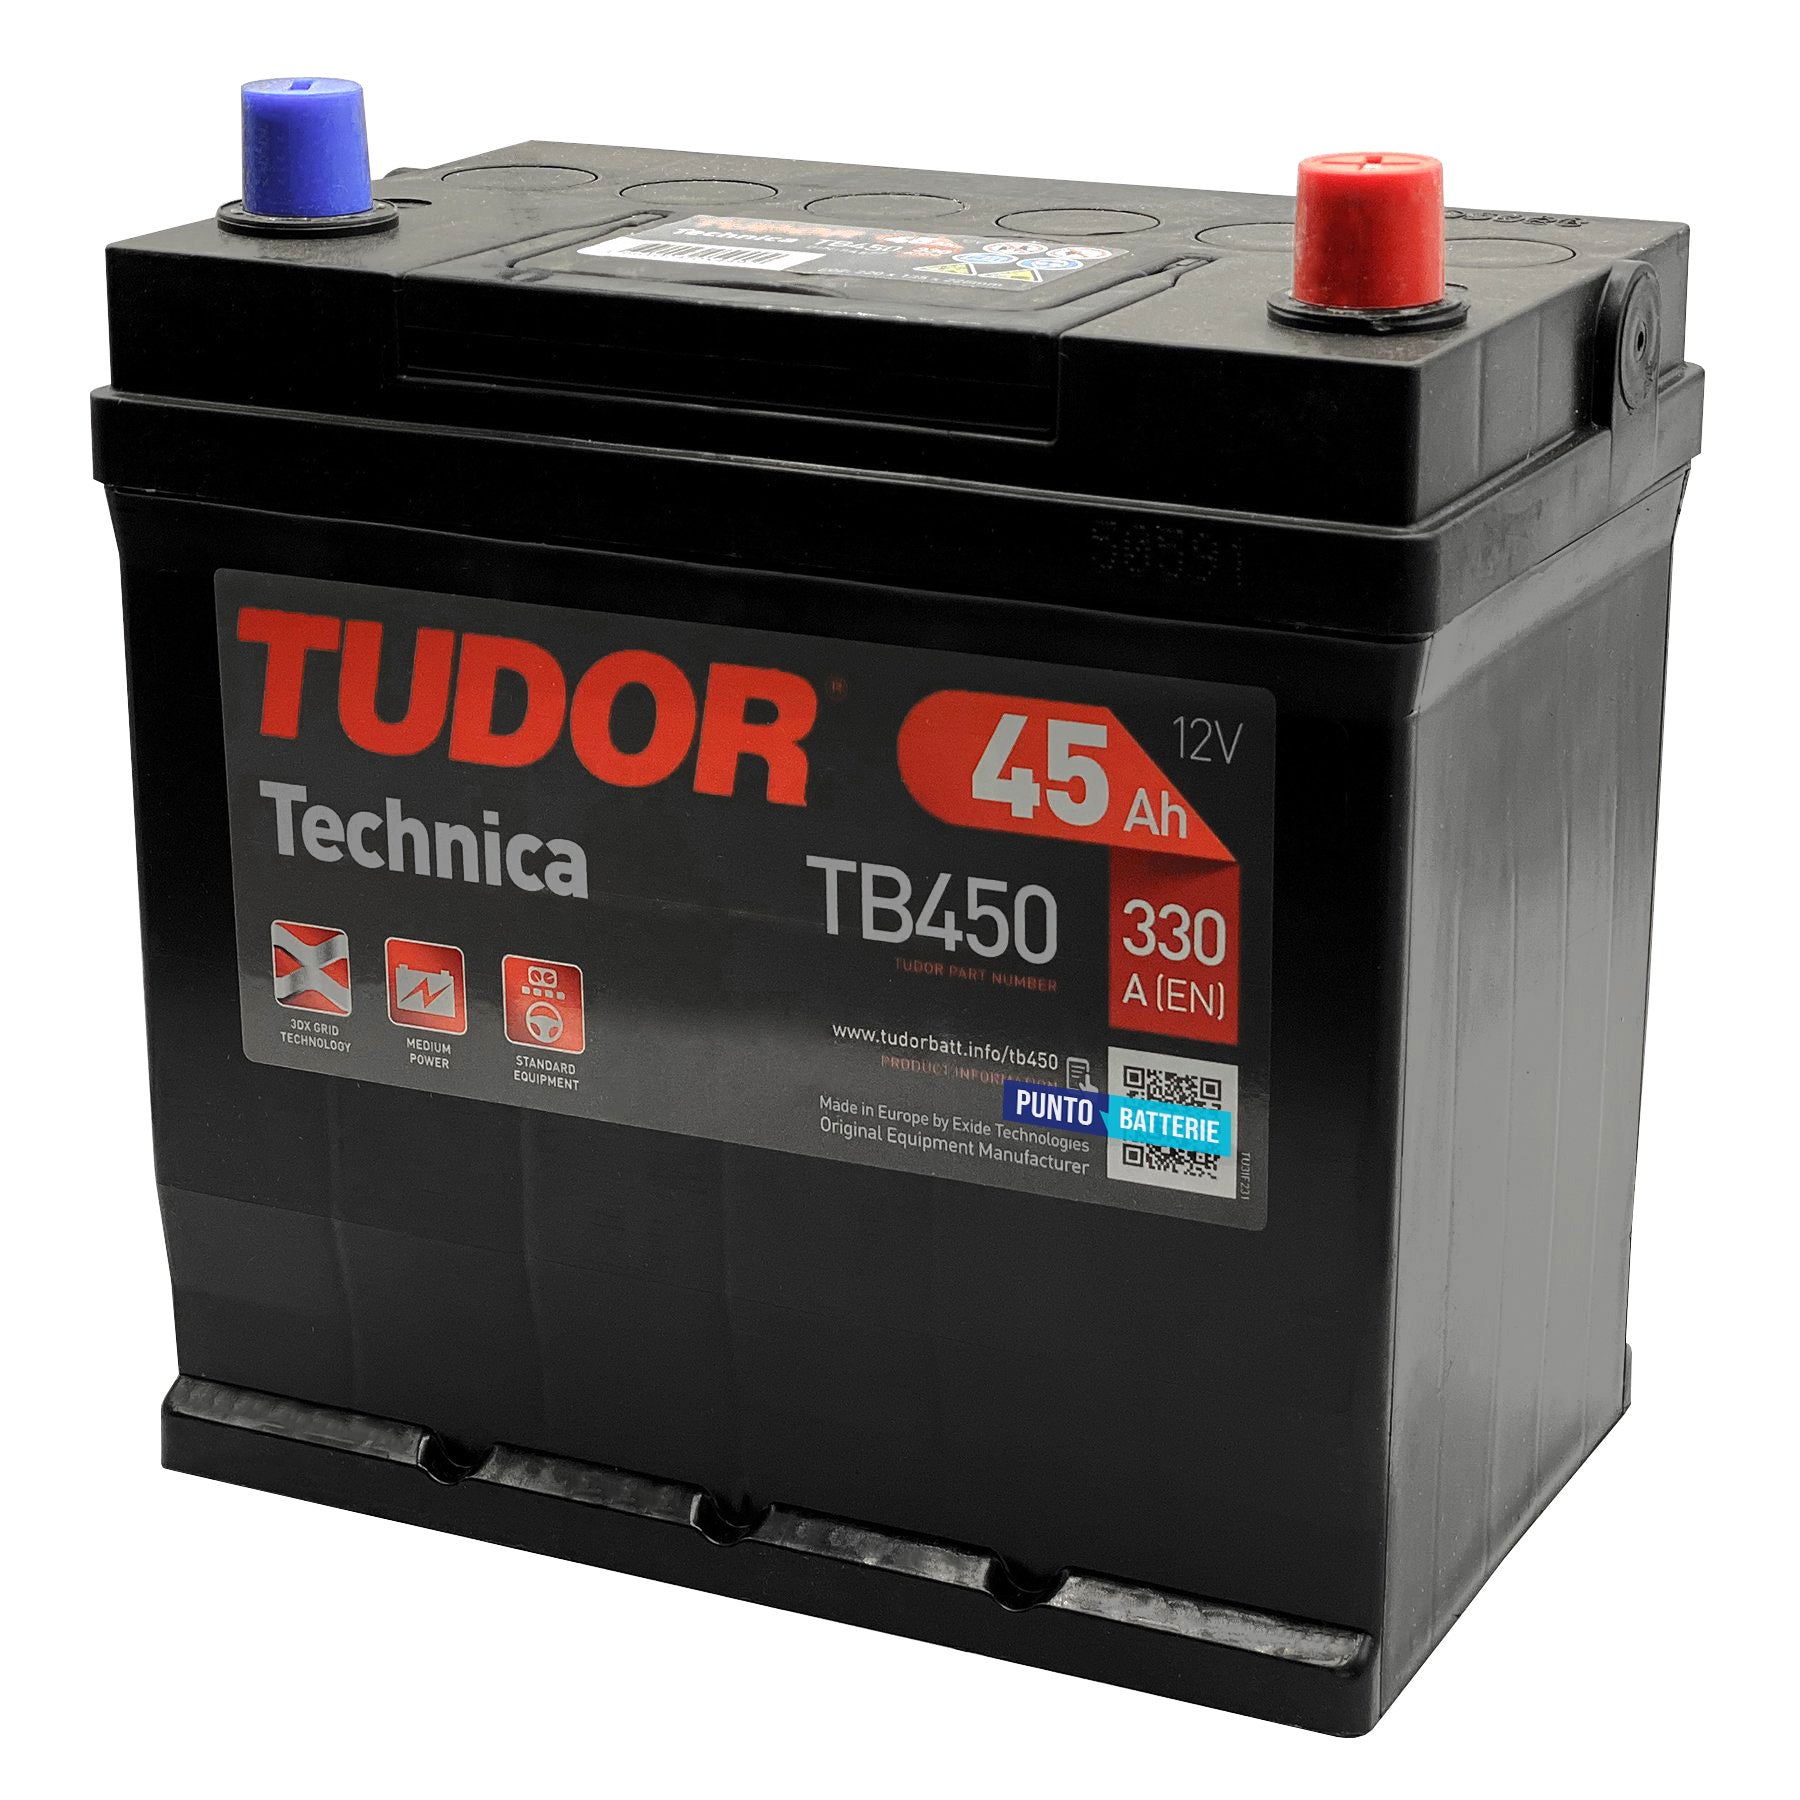 Batteria originale Tudor Technica TB450, dimensioni 220 x 135 x 225, polo positivo a destra, 12 volt, 45 amperora, 330 ampere. Batteria per auto e veicoli leggeri.